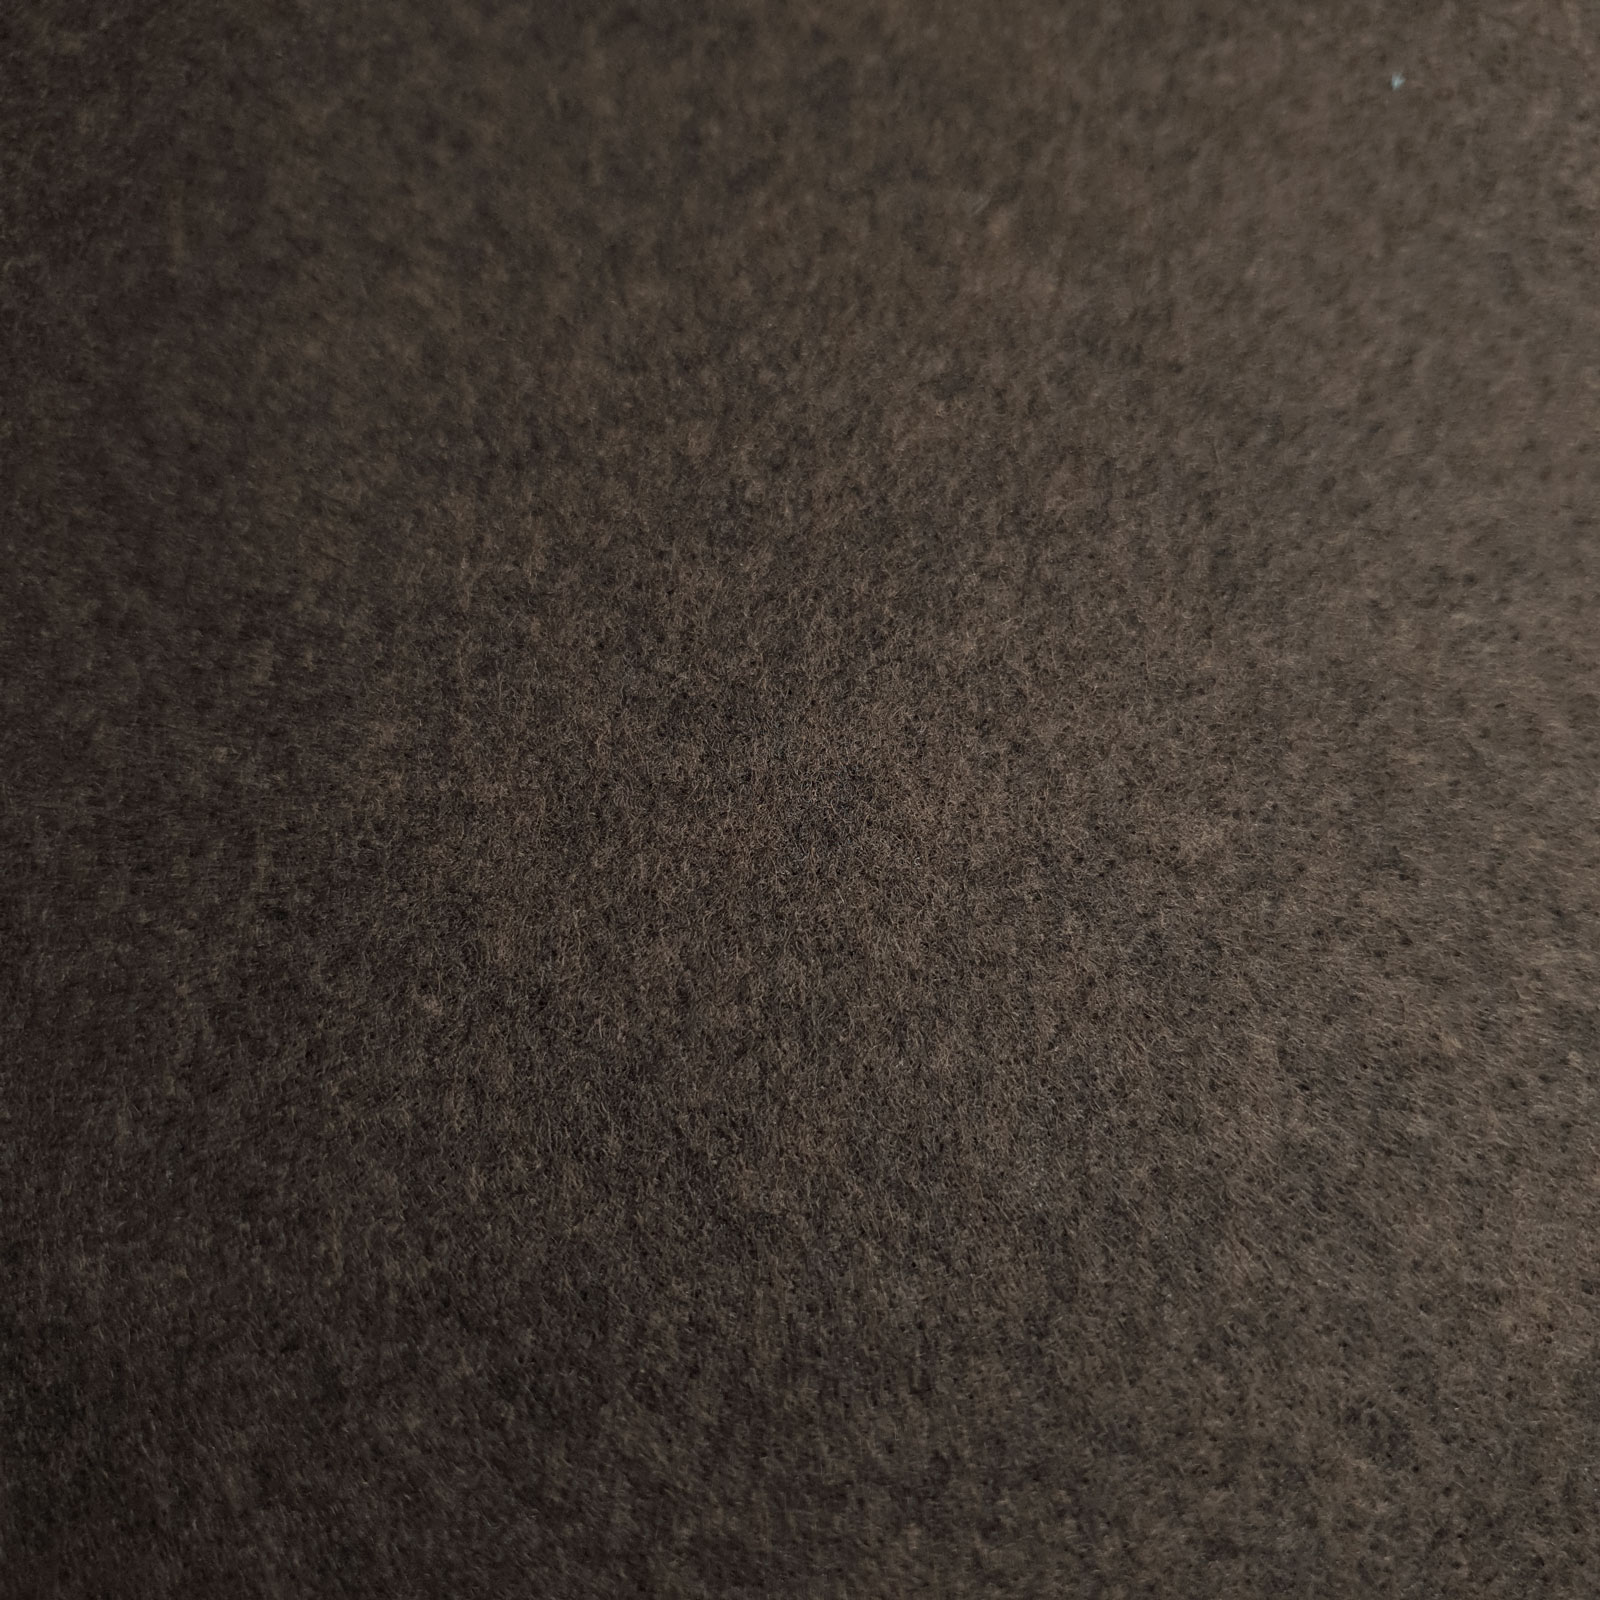  Filt - håndverksfilt / pyntefilt - mørkebrun melange